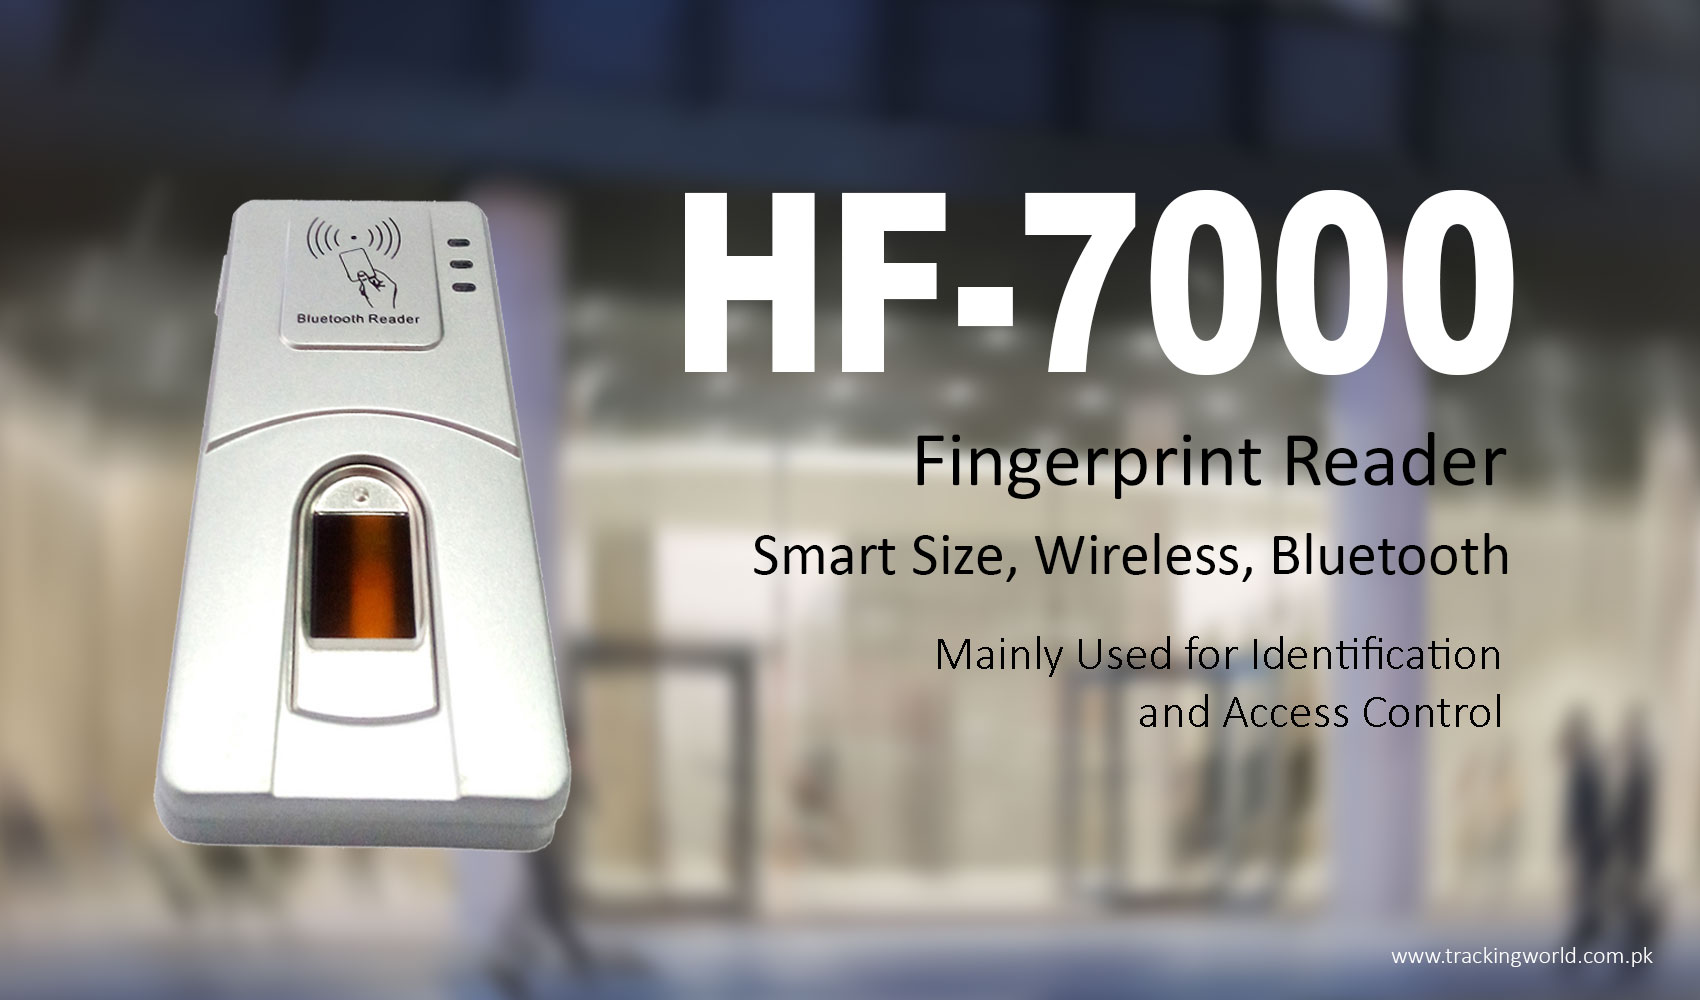 HF-7000